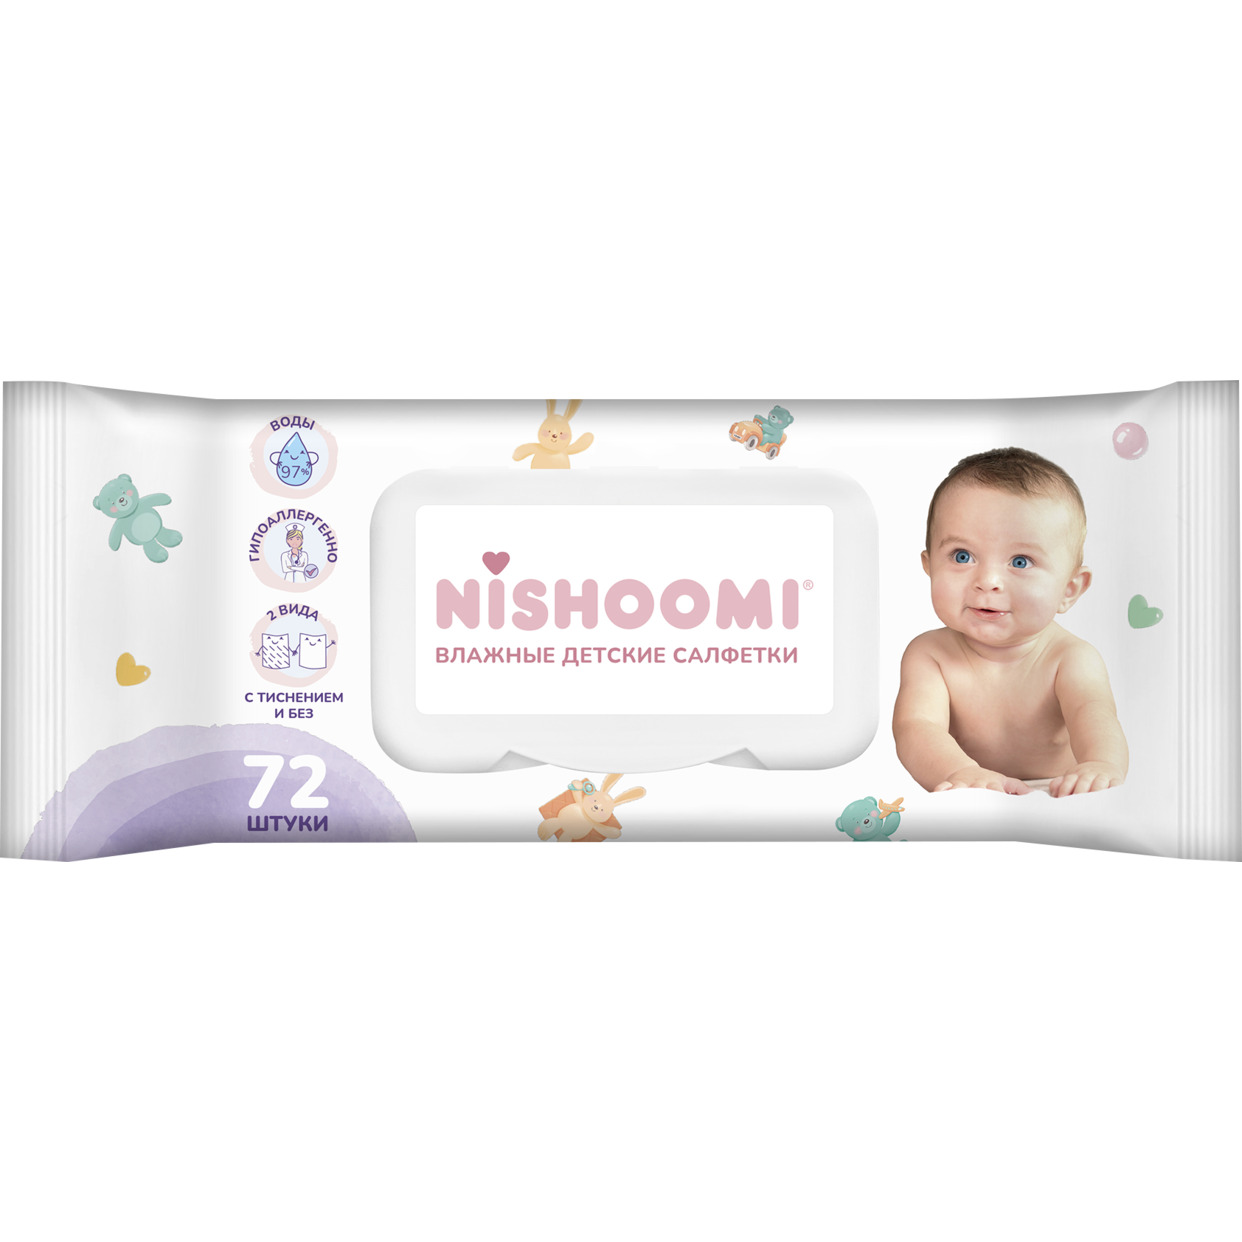 Влажные детские салфетки товарного знака «Nishoomi» 72 шт.